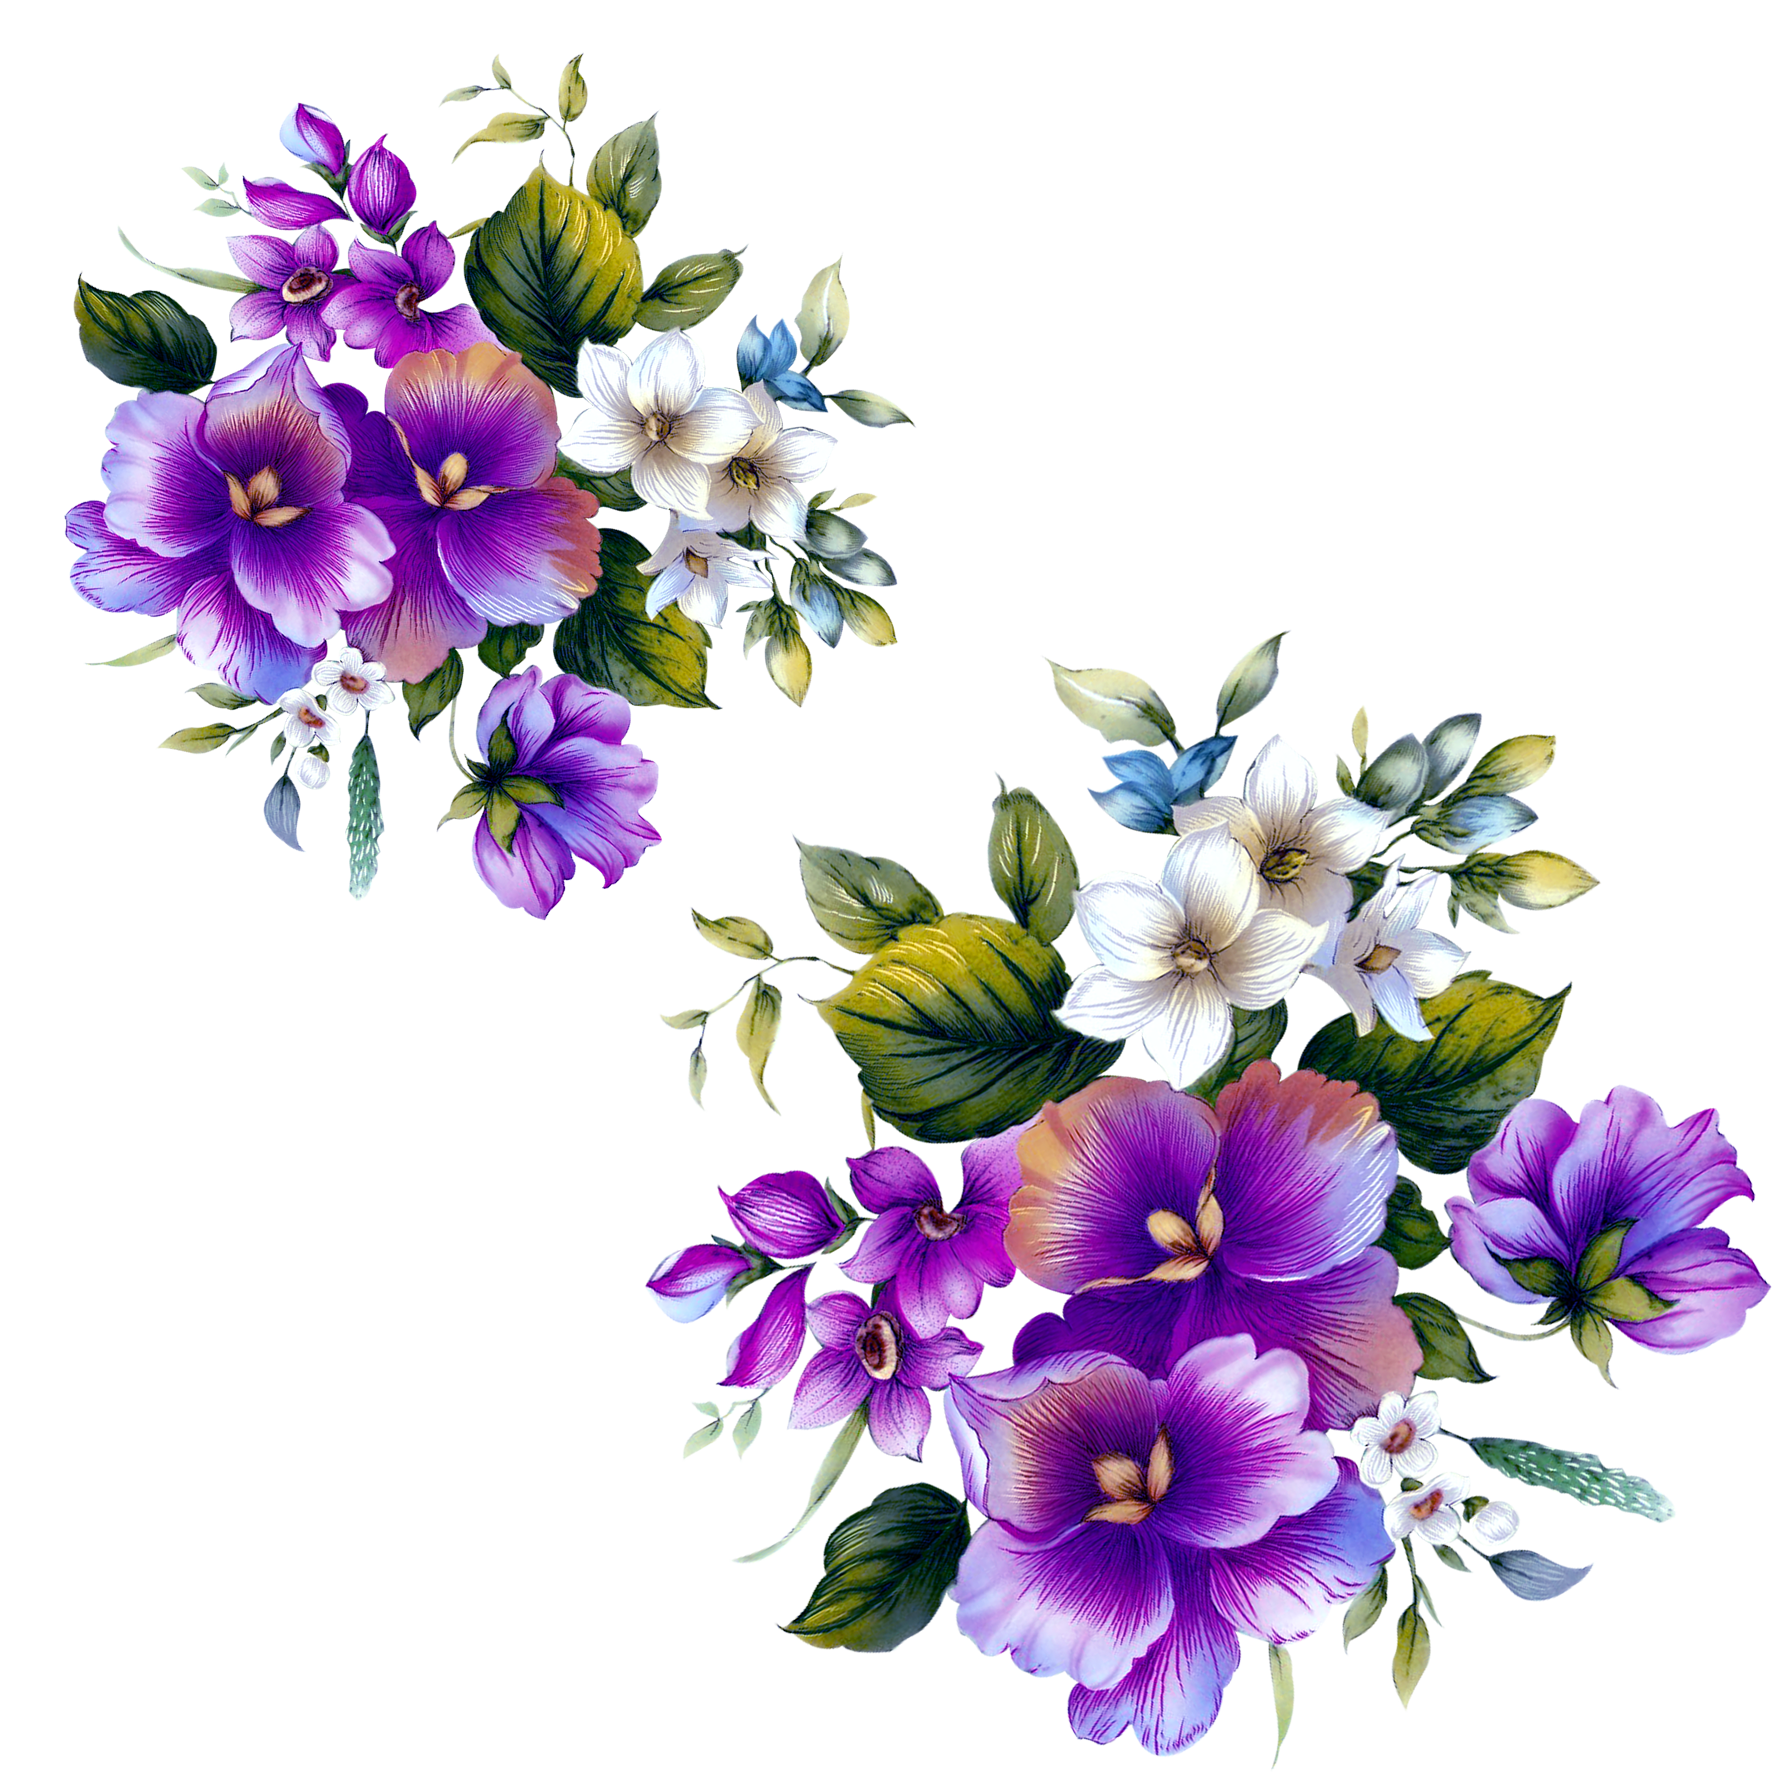 Floral design Flower Purple - Purple flowers decorative floral patterns